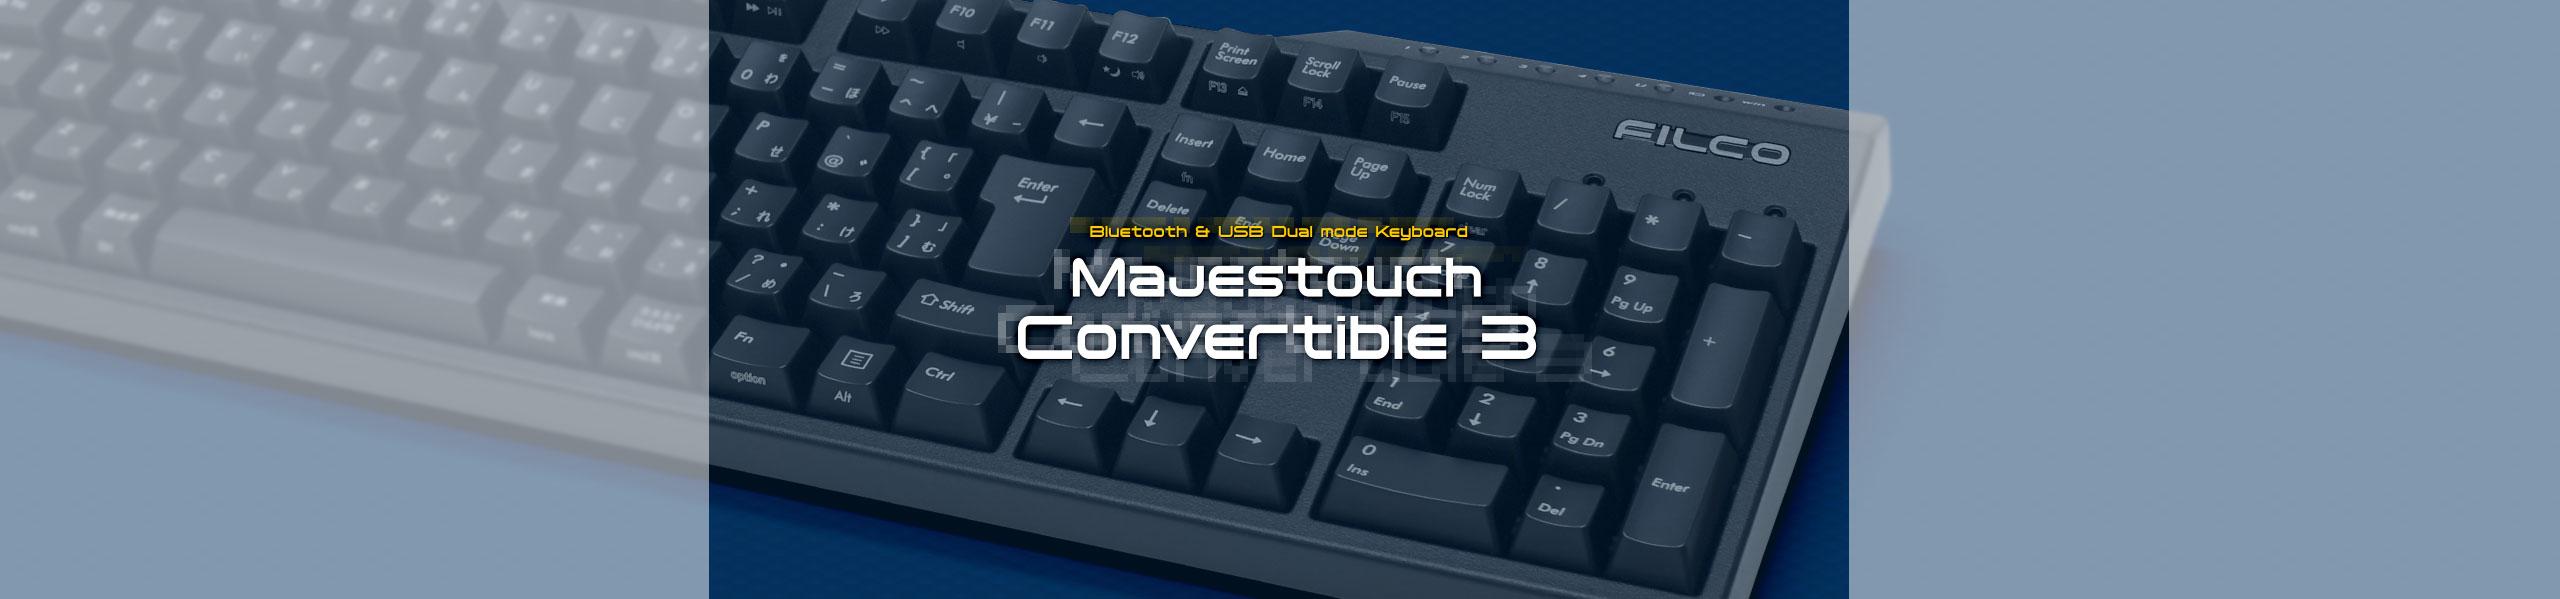 Majetouch Convertible 3